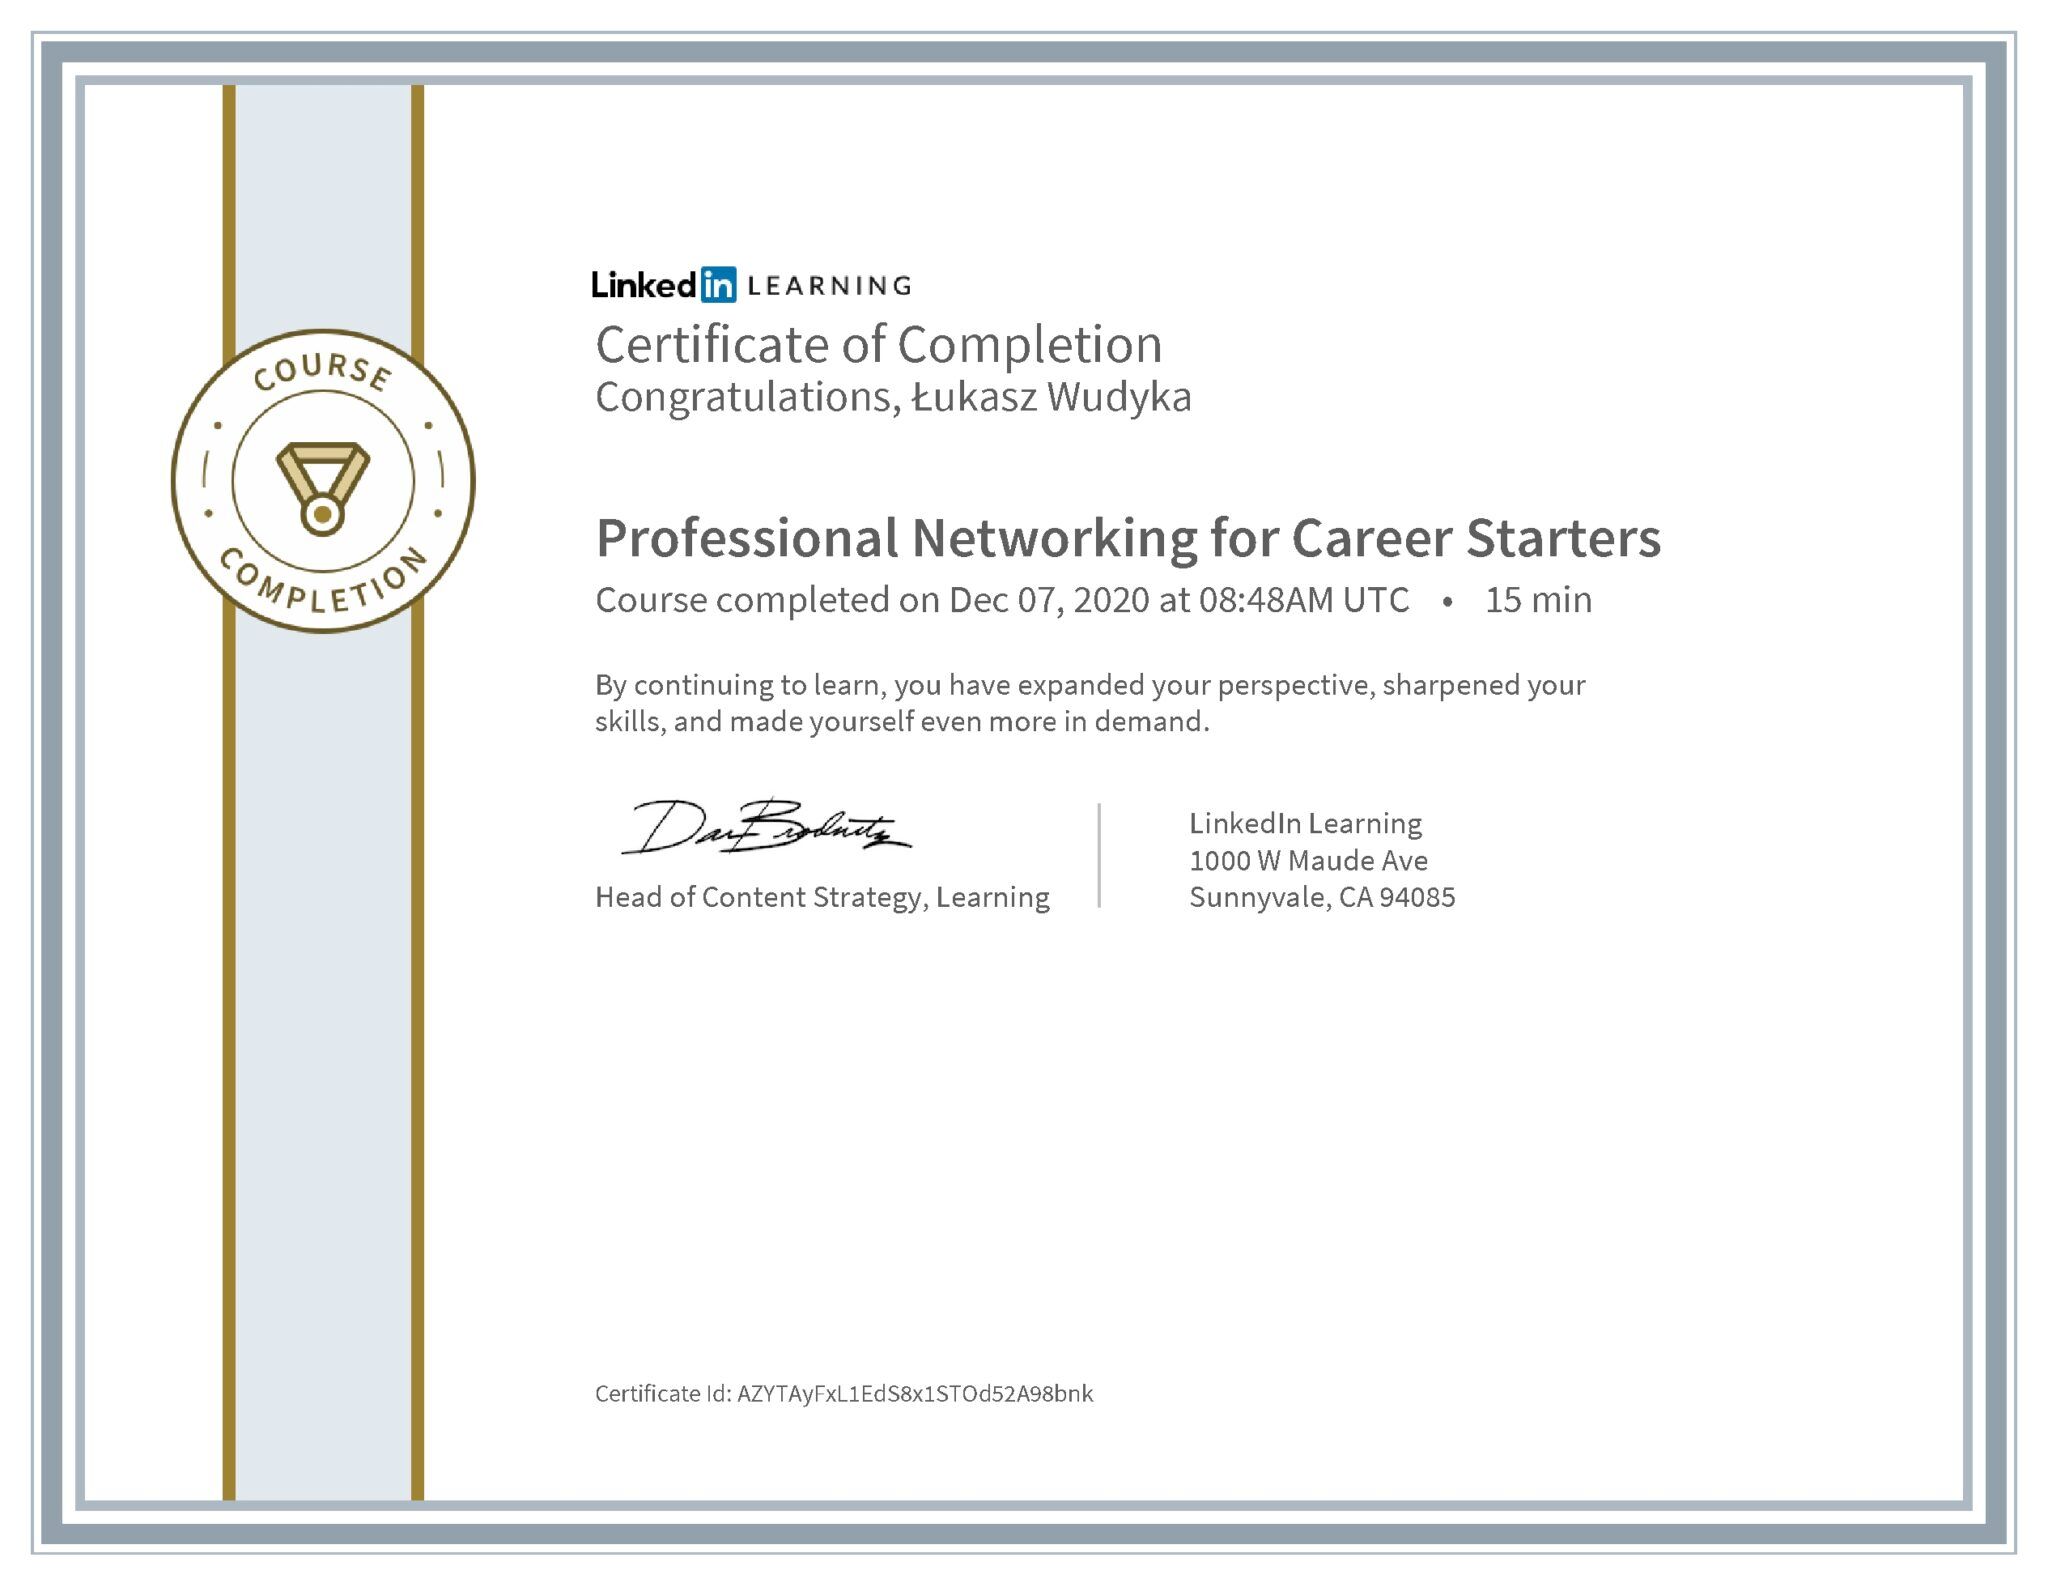 Łukasz Wudyka certyfikat LinkedIn Professional Networking for Career Starters